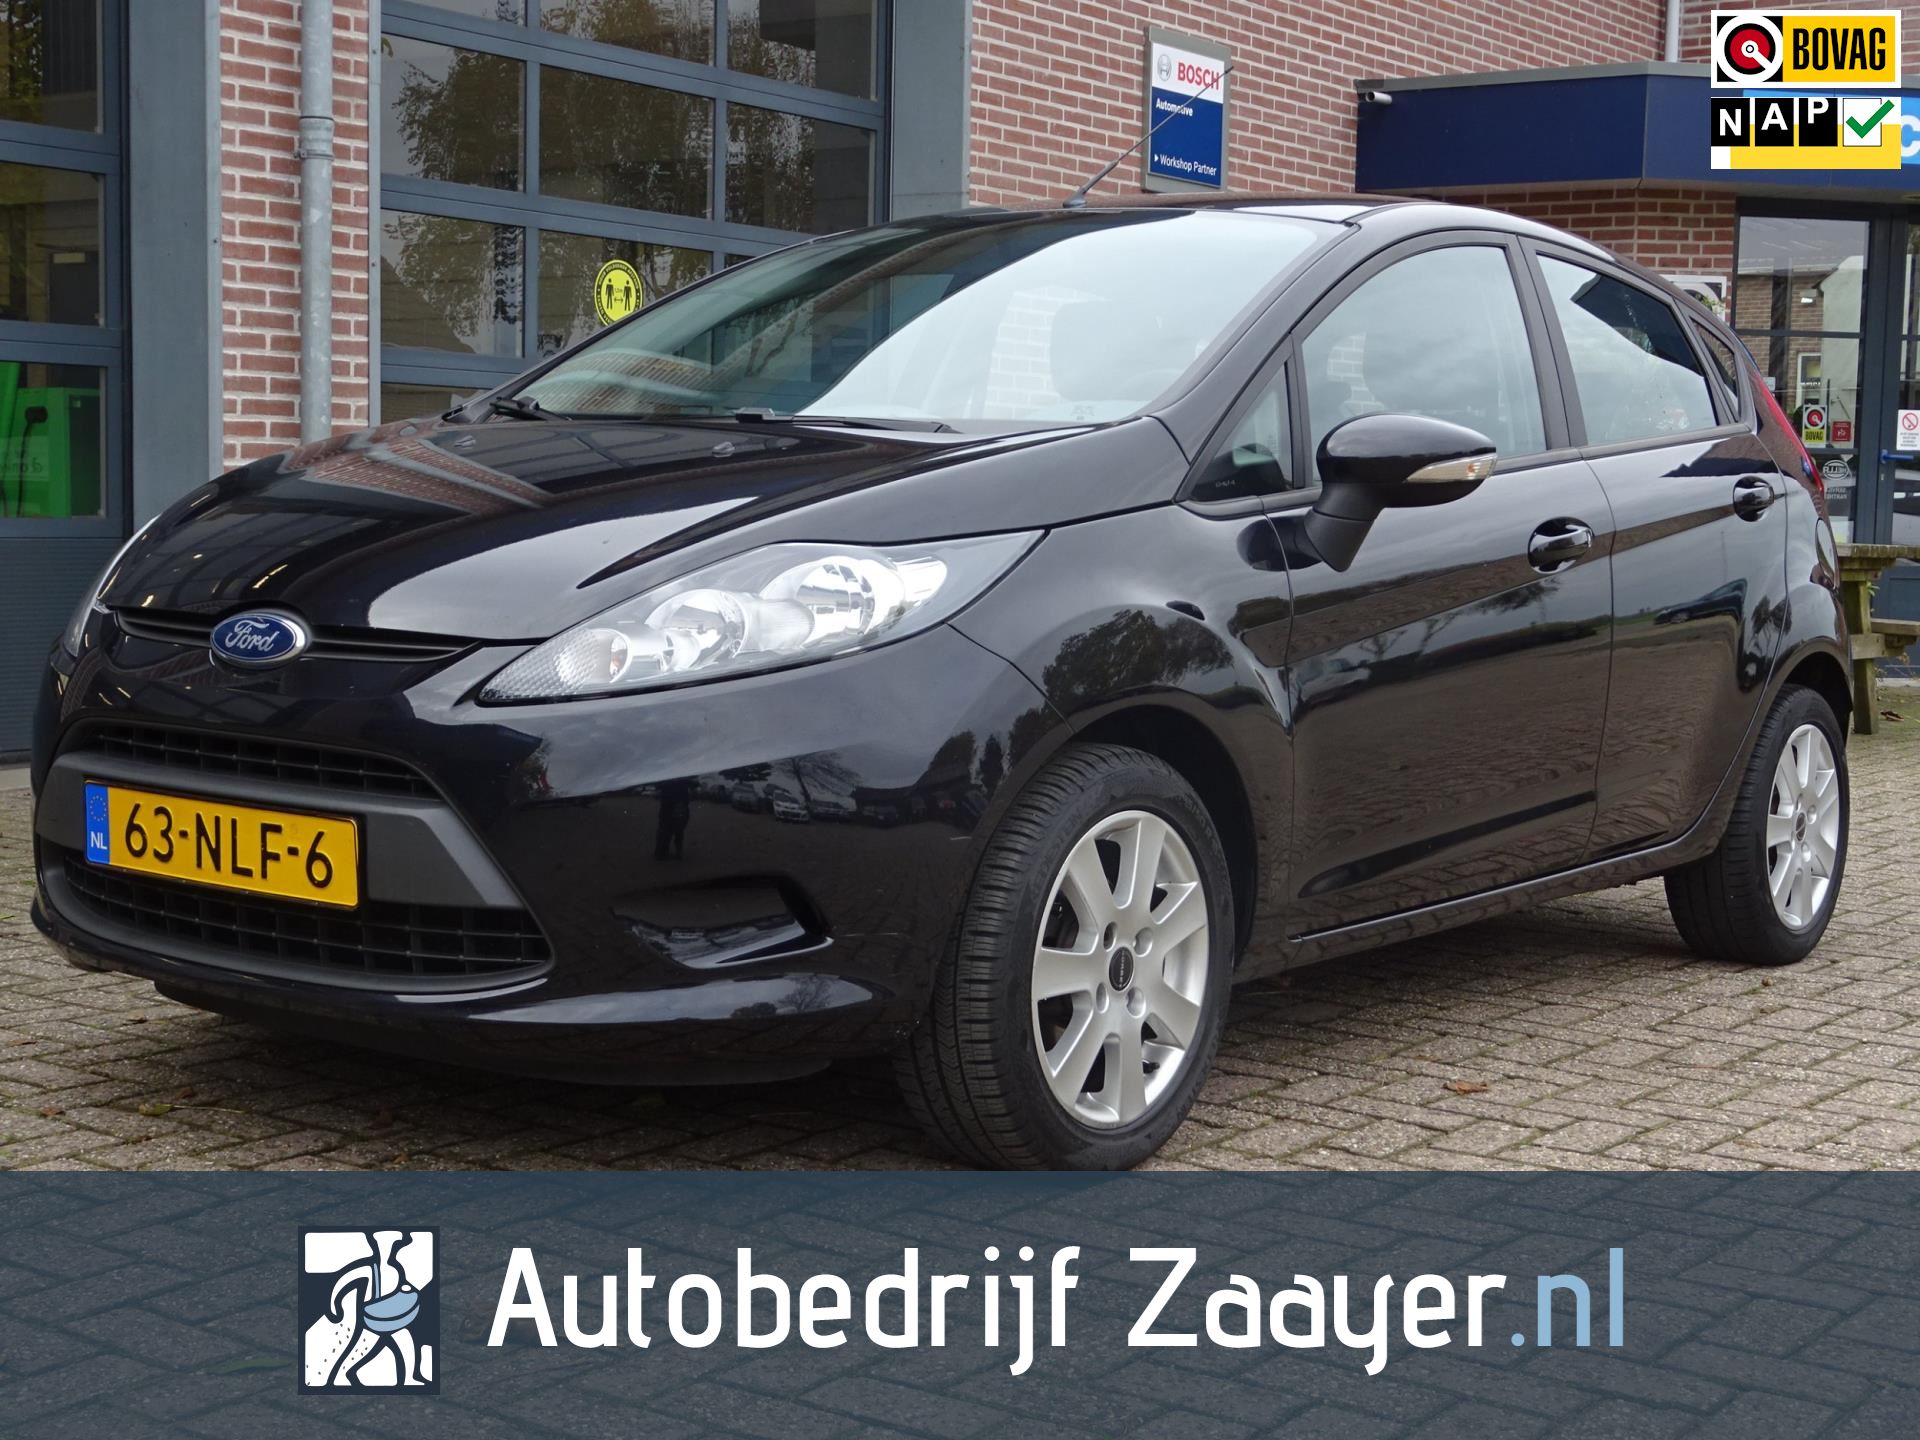 amplitude Een nacht klep Ford Fiesta - 1.25 Limited Benzine uit 2010 - www.zaayer.nl